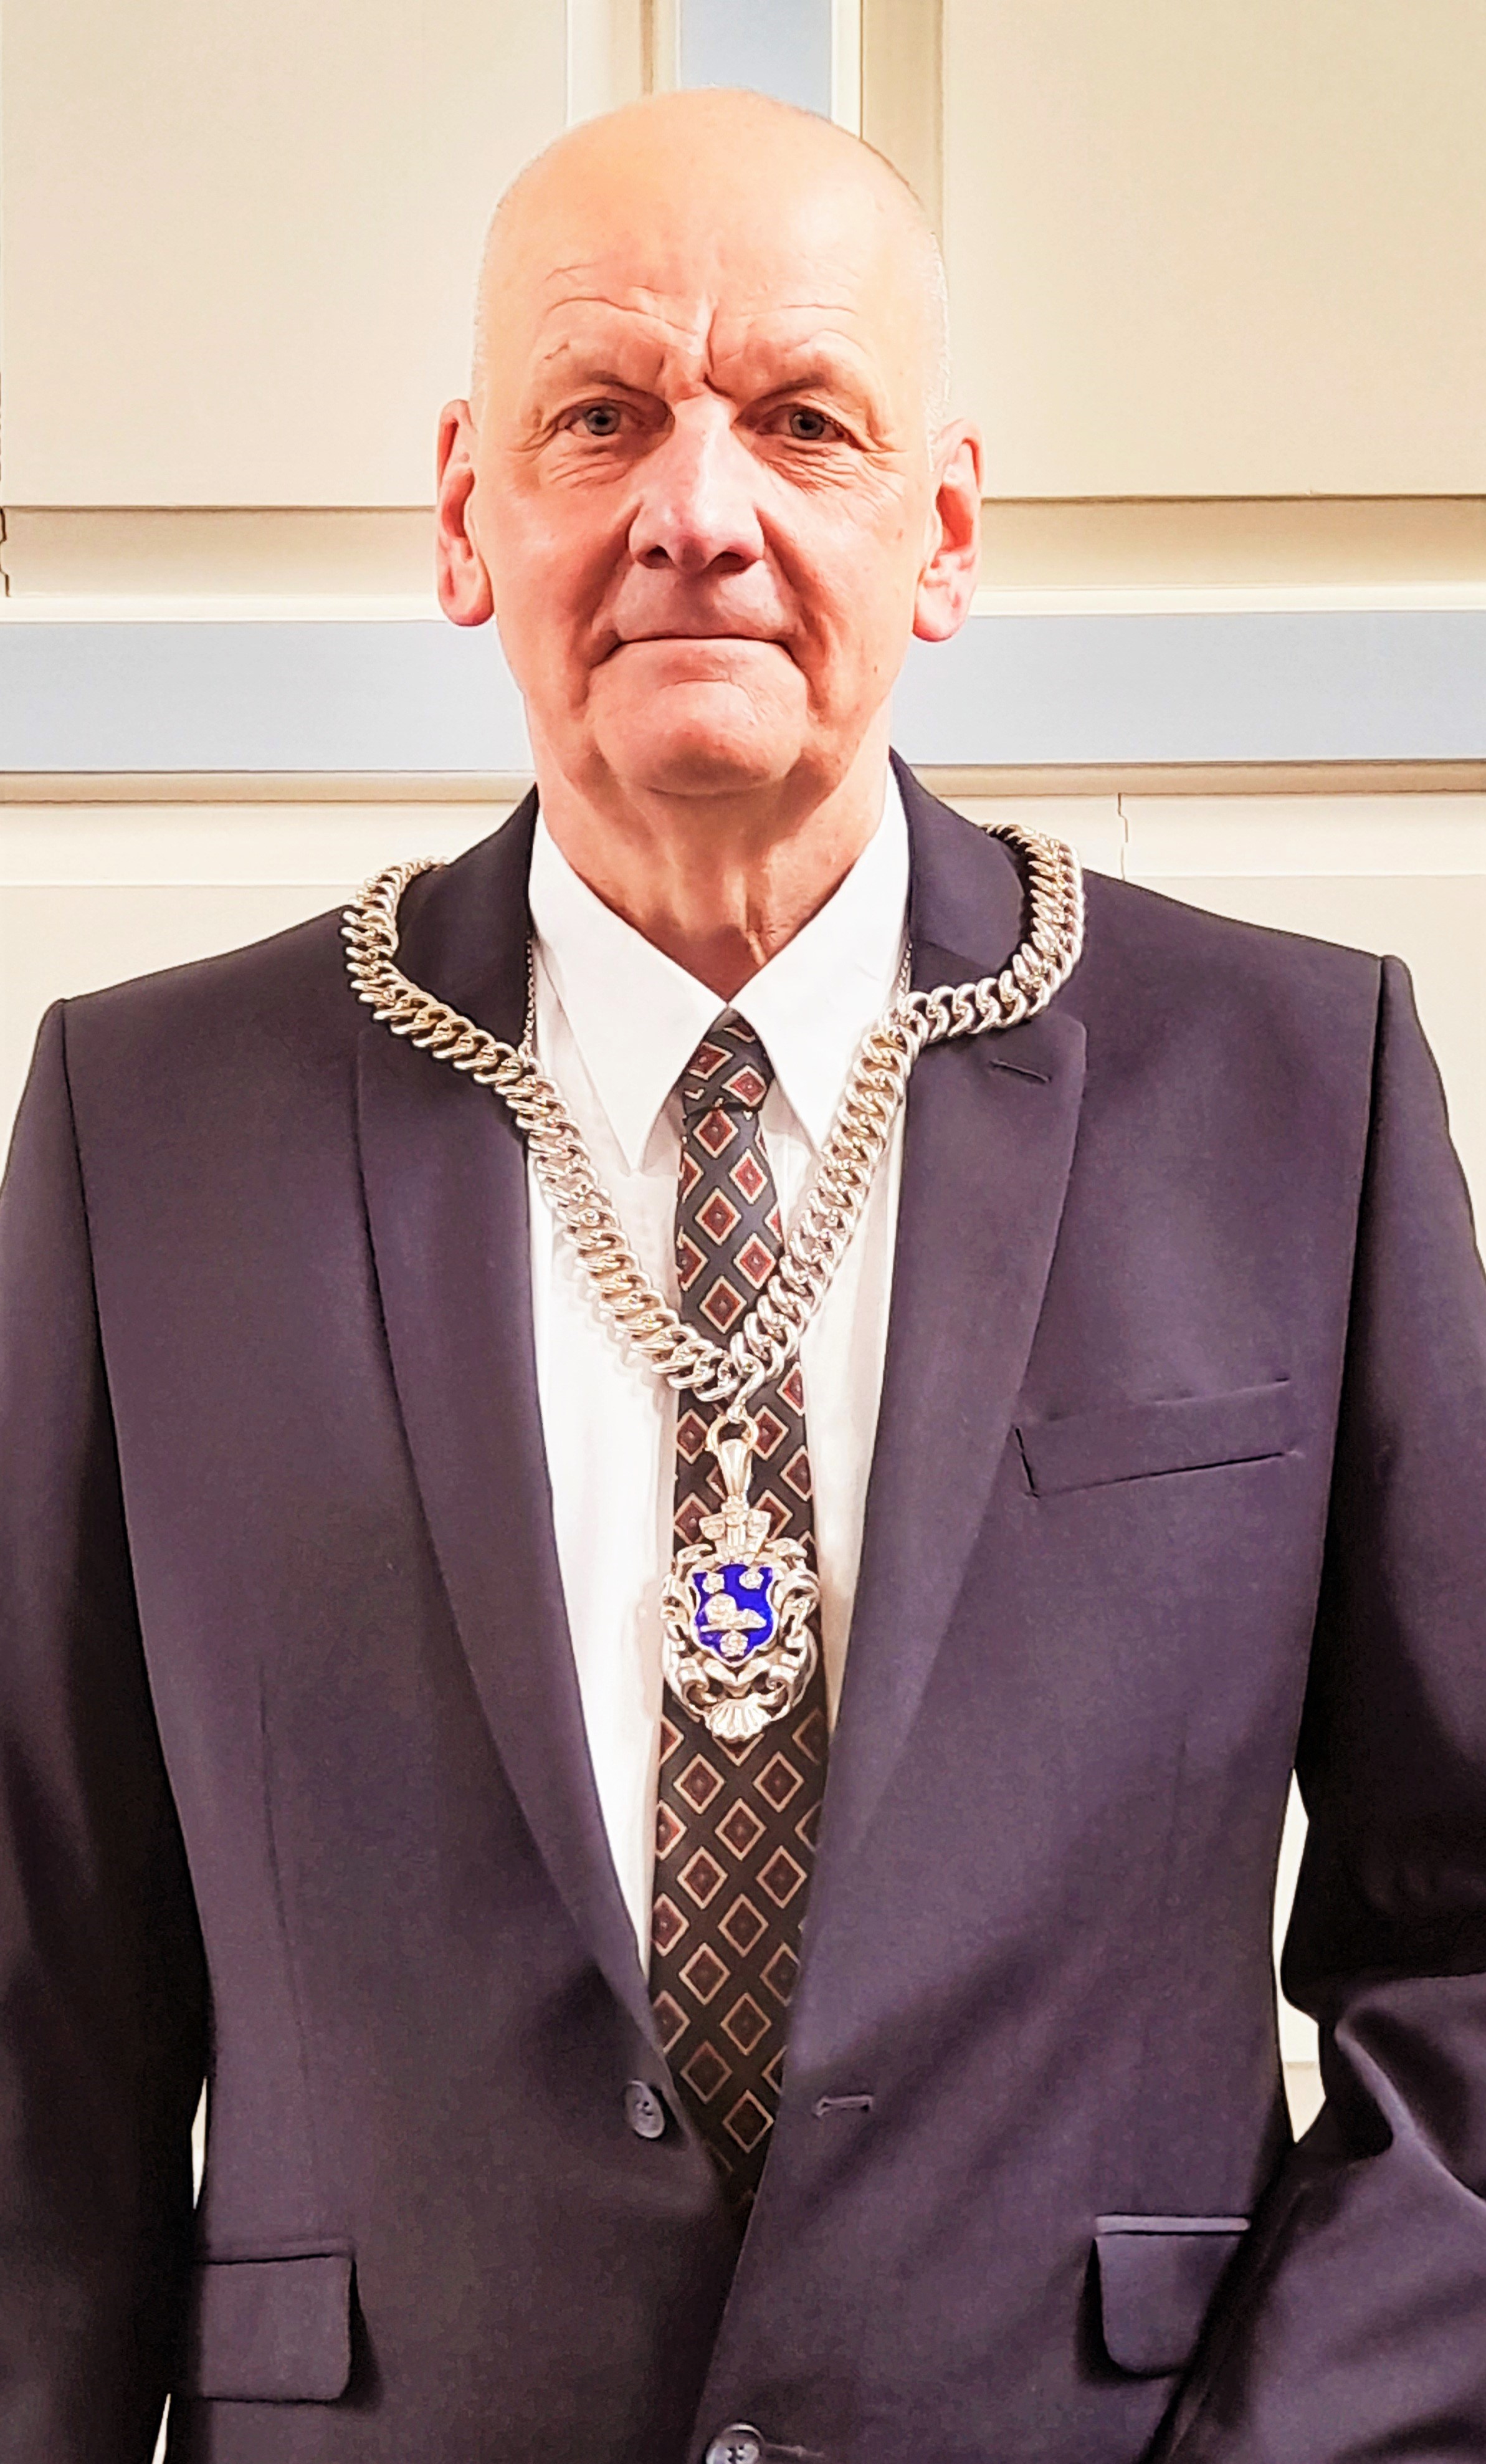 An image of the mayor of ludlow Glenn Ginger